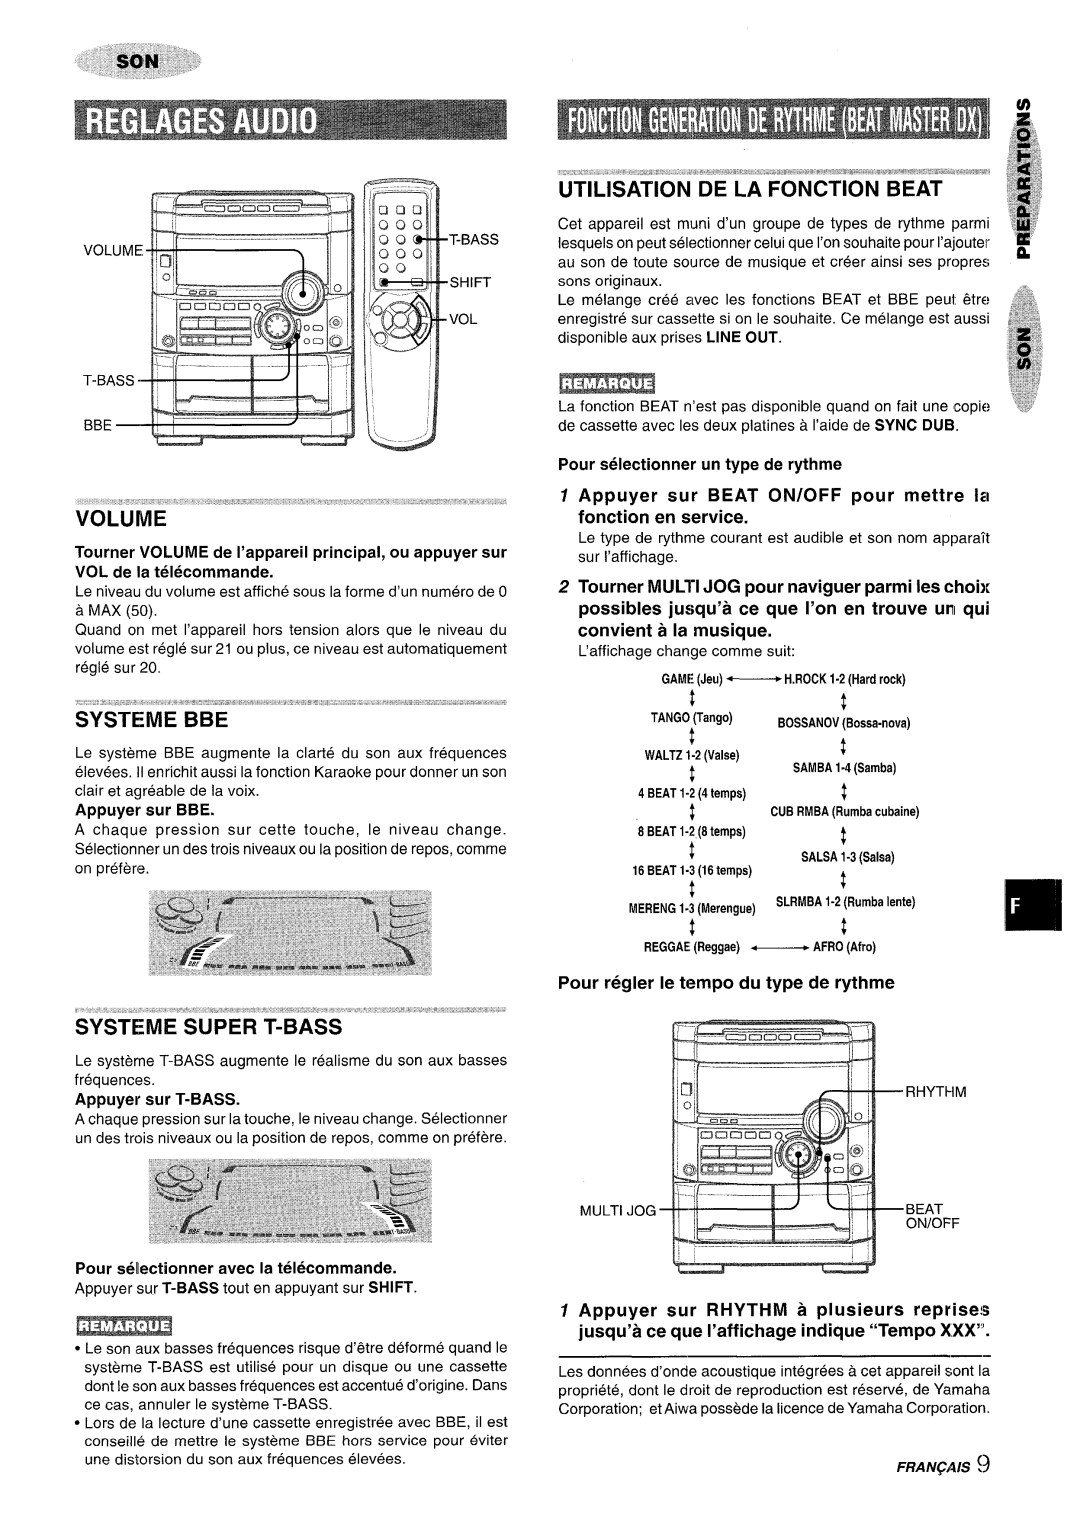 Sony NSX-A777 manual Appuyer sur BEAT ON/OFF pour mettre 11 fonction en service, Pour regler Ie tempo du type de rythme 